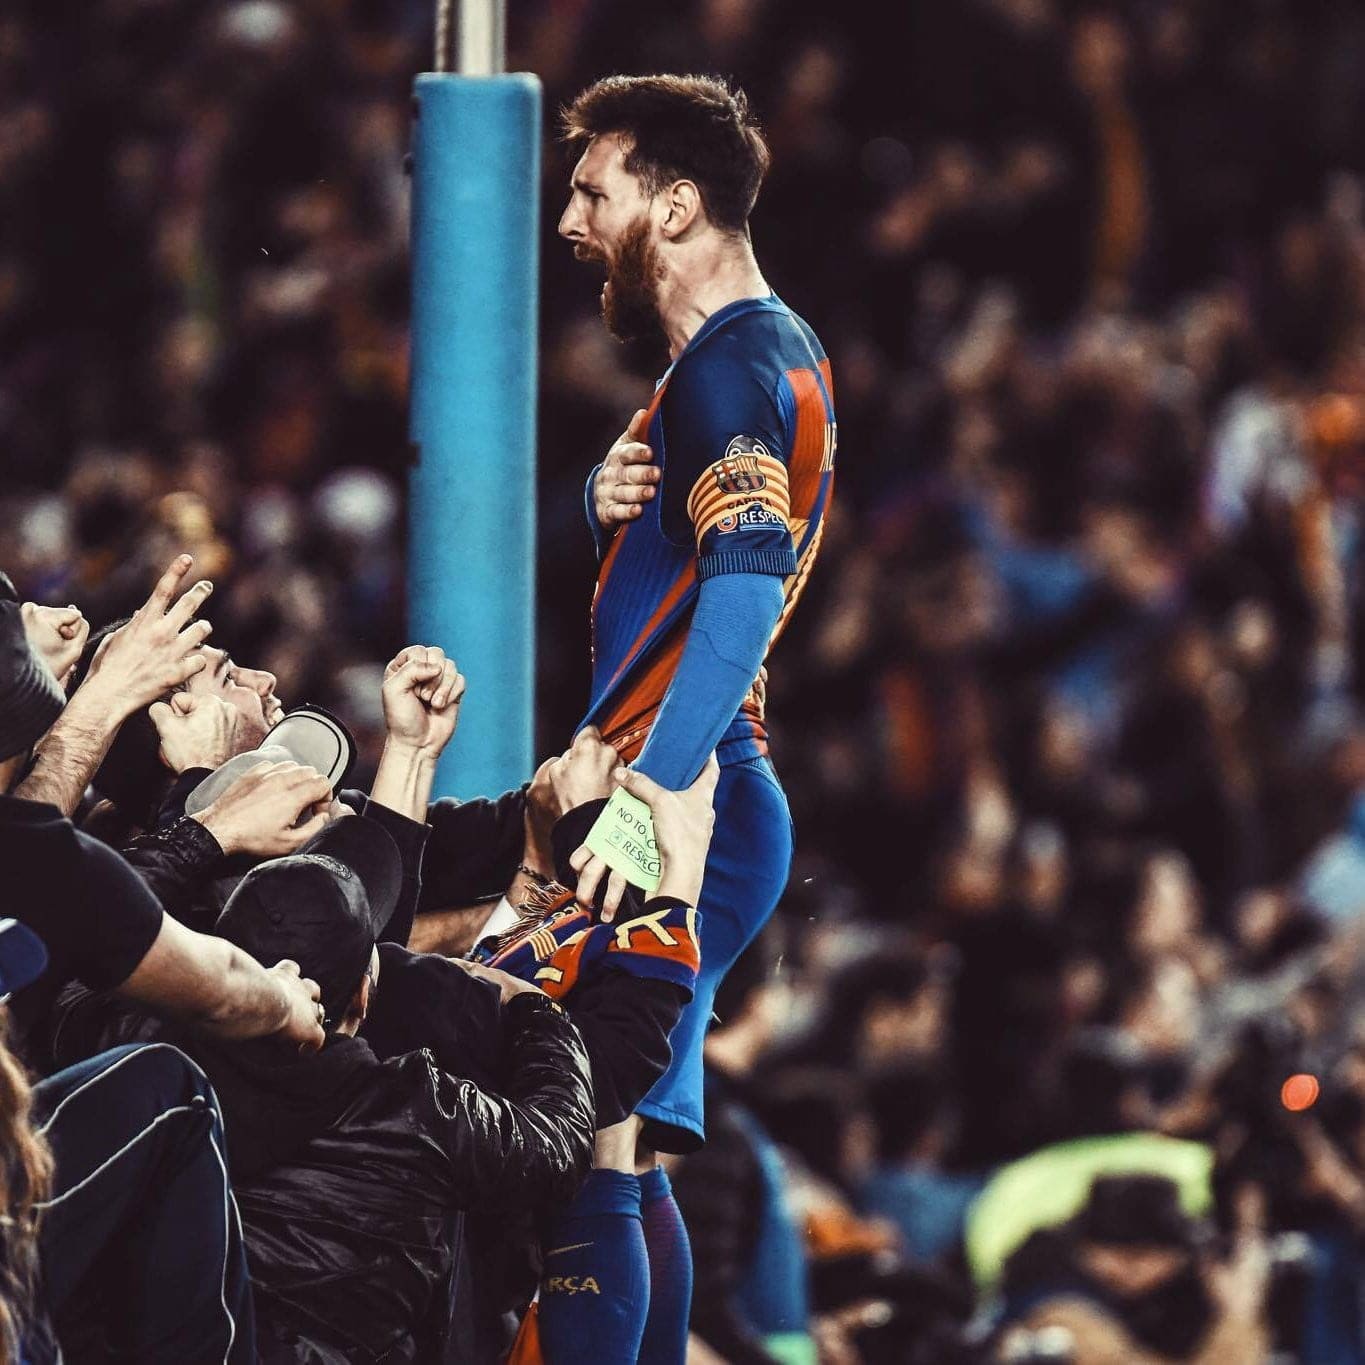 صورة ميسي وهو يحتفل بتسجيله الهدف مع جماهير برشلونة في ملعب الكامب نو بدقة 4K | صور عربية